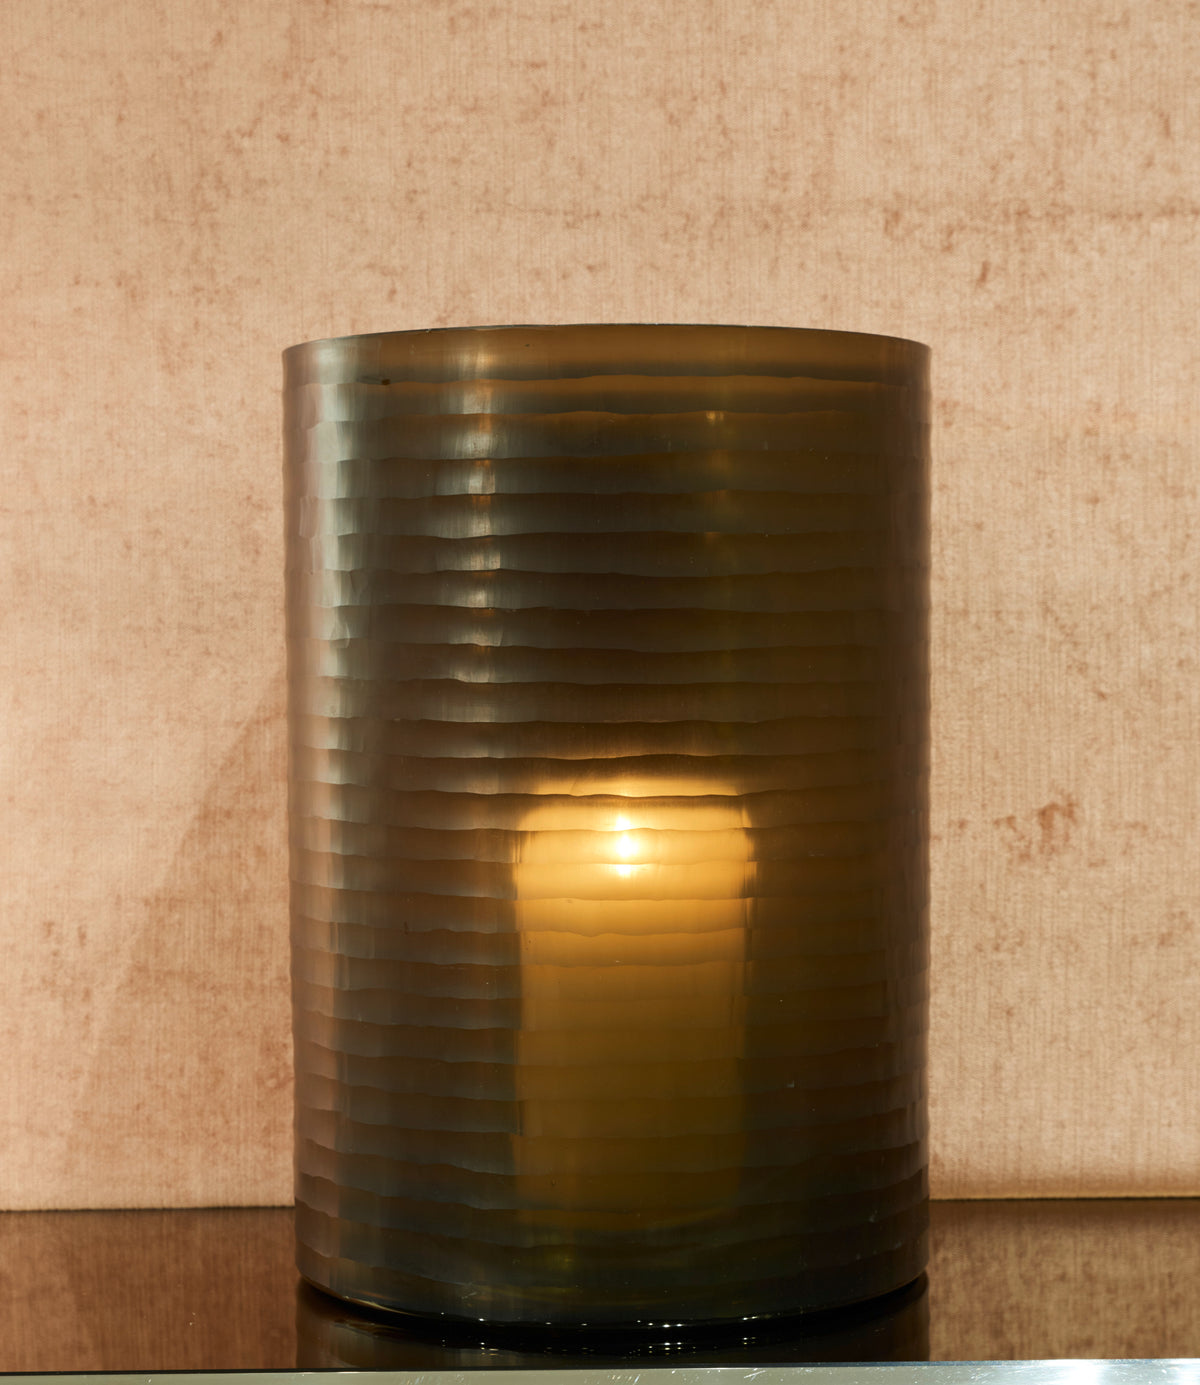 O4home - Windlicht / Vase aus Glas gerillt in braun